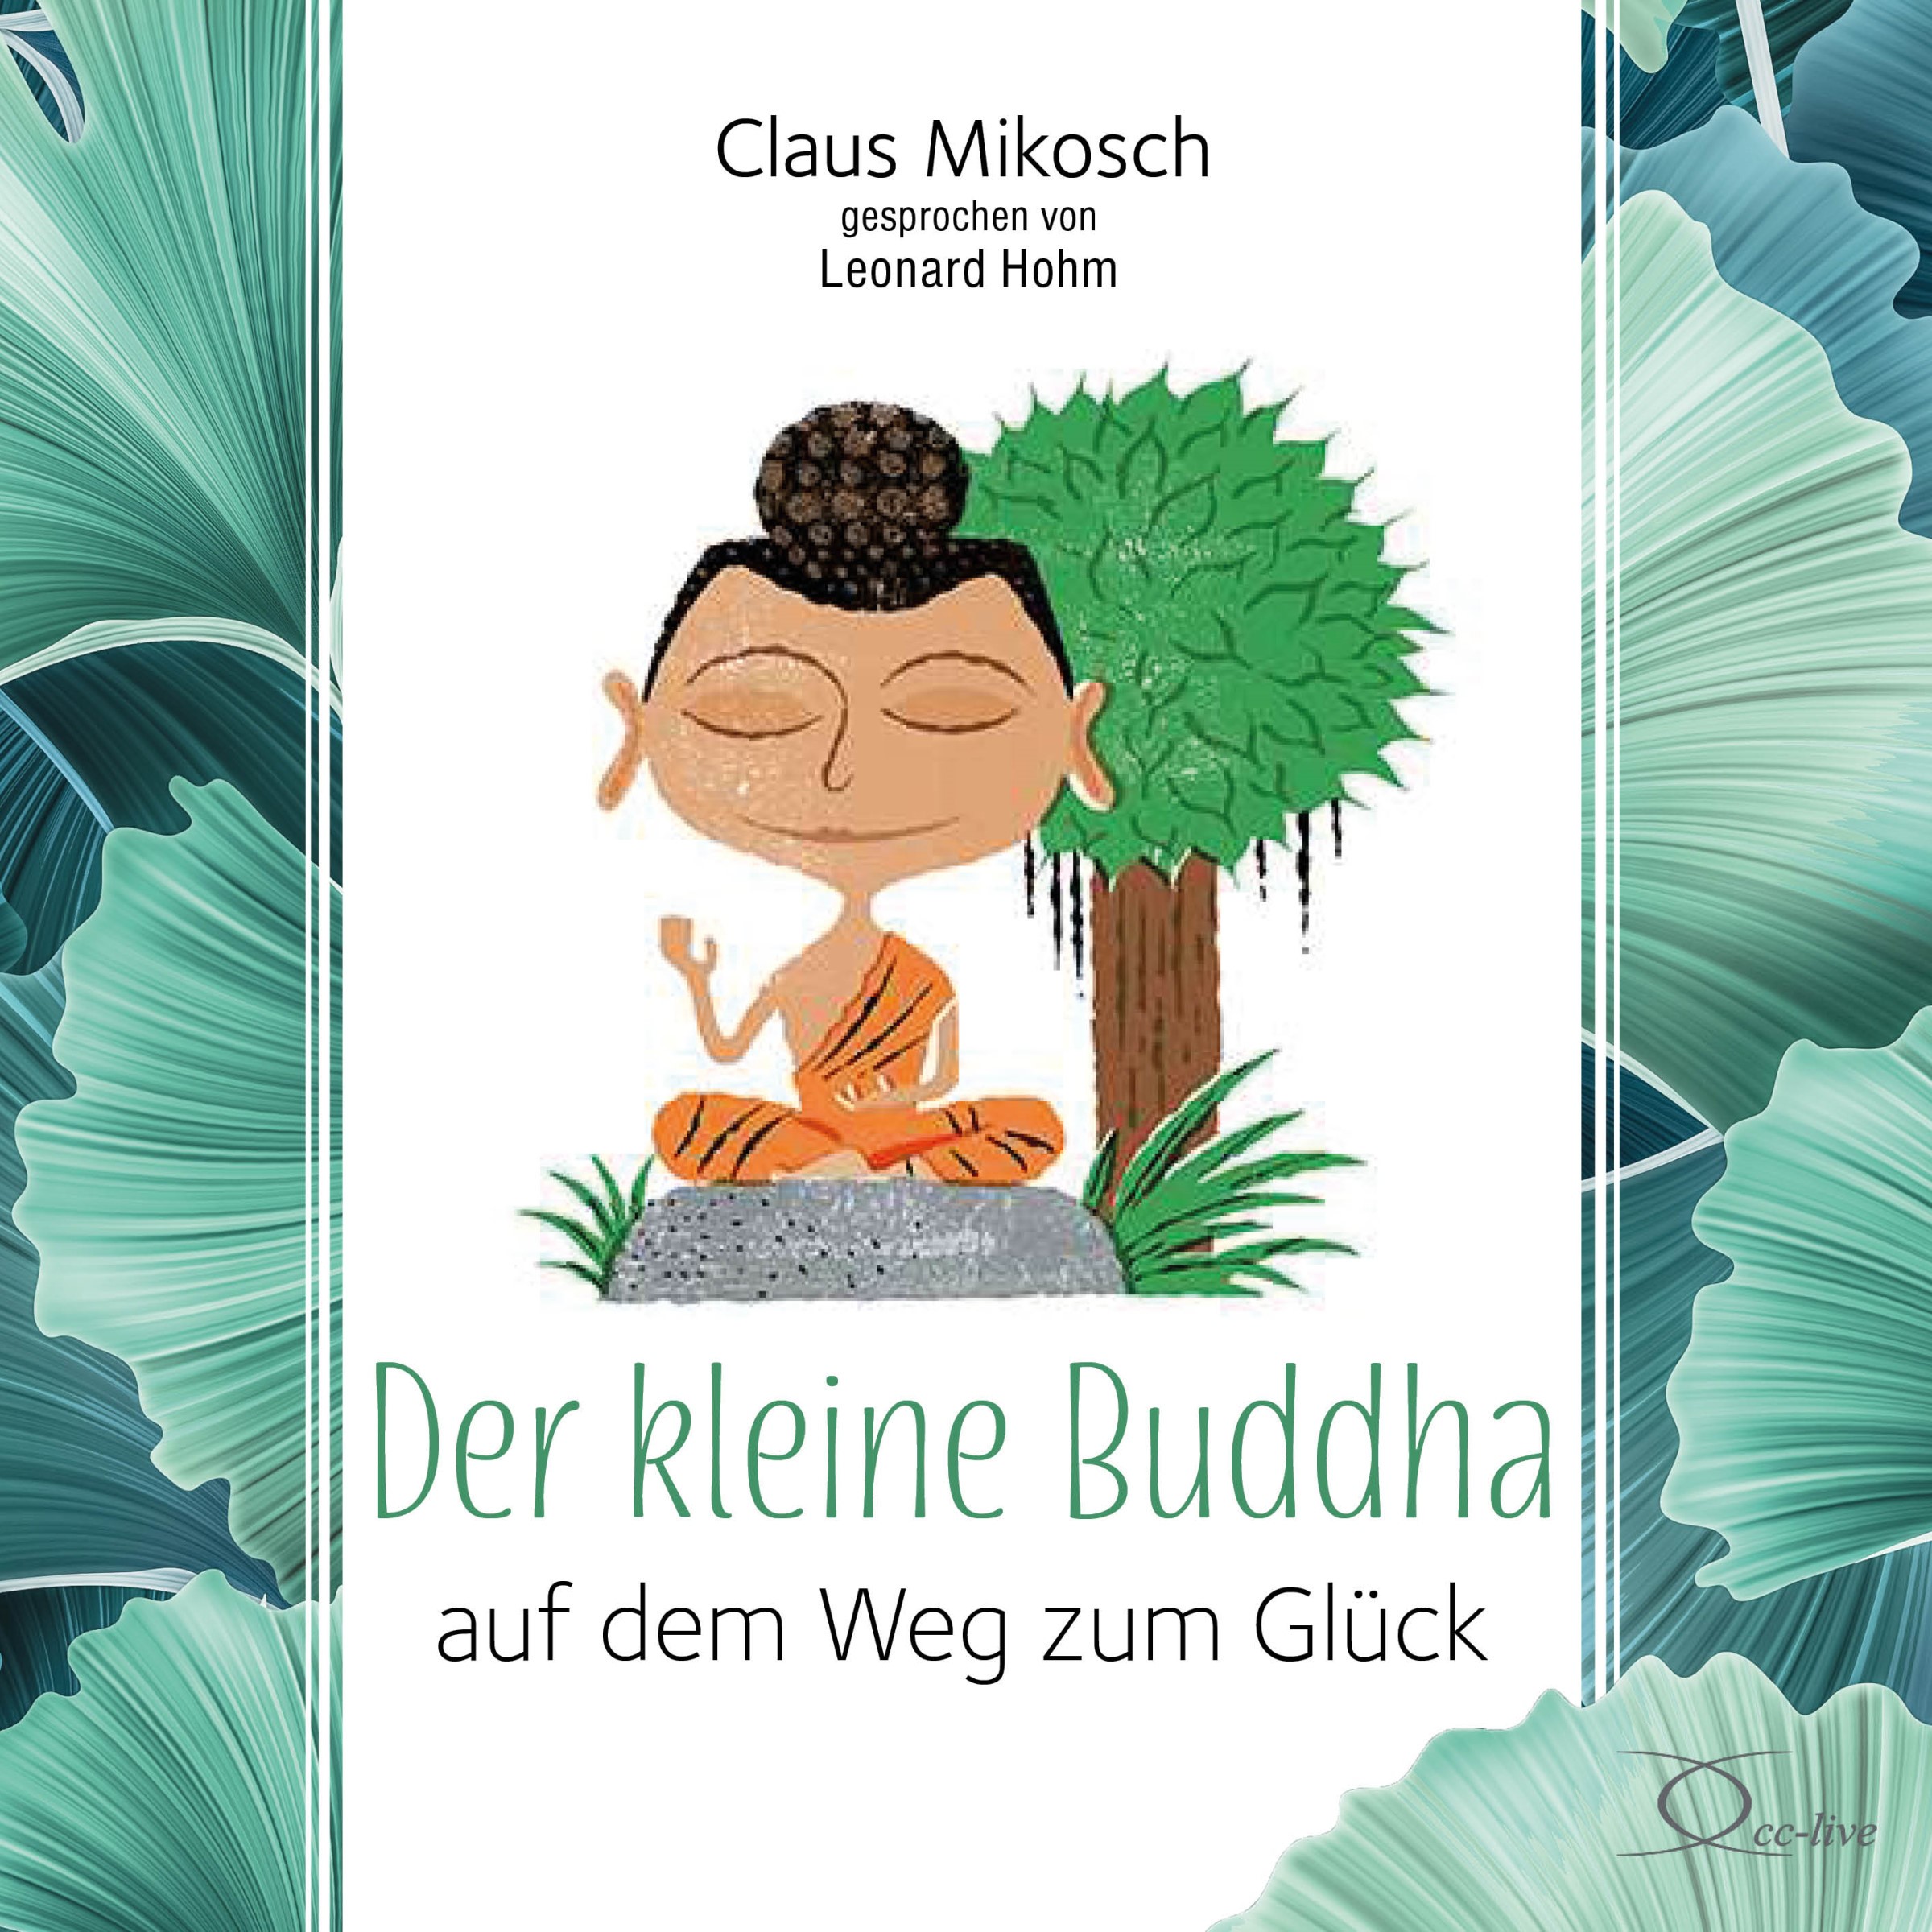 Claus Mikosch: Der kleine Buddha auf dem Weg zum Glück